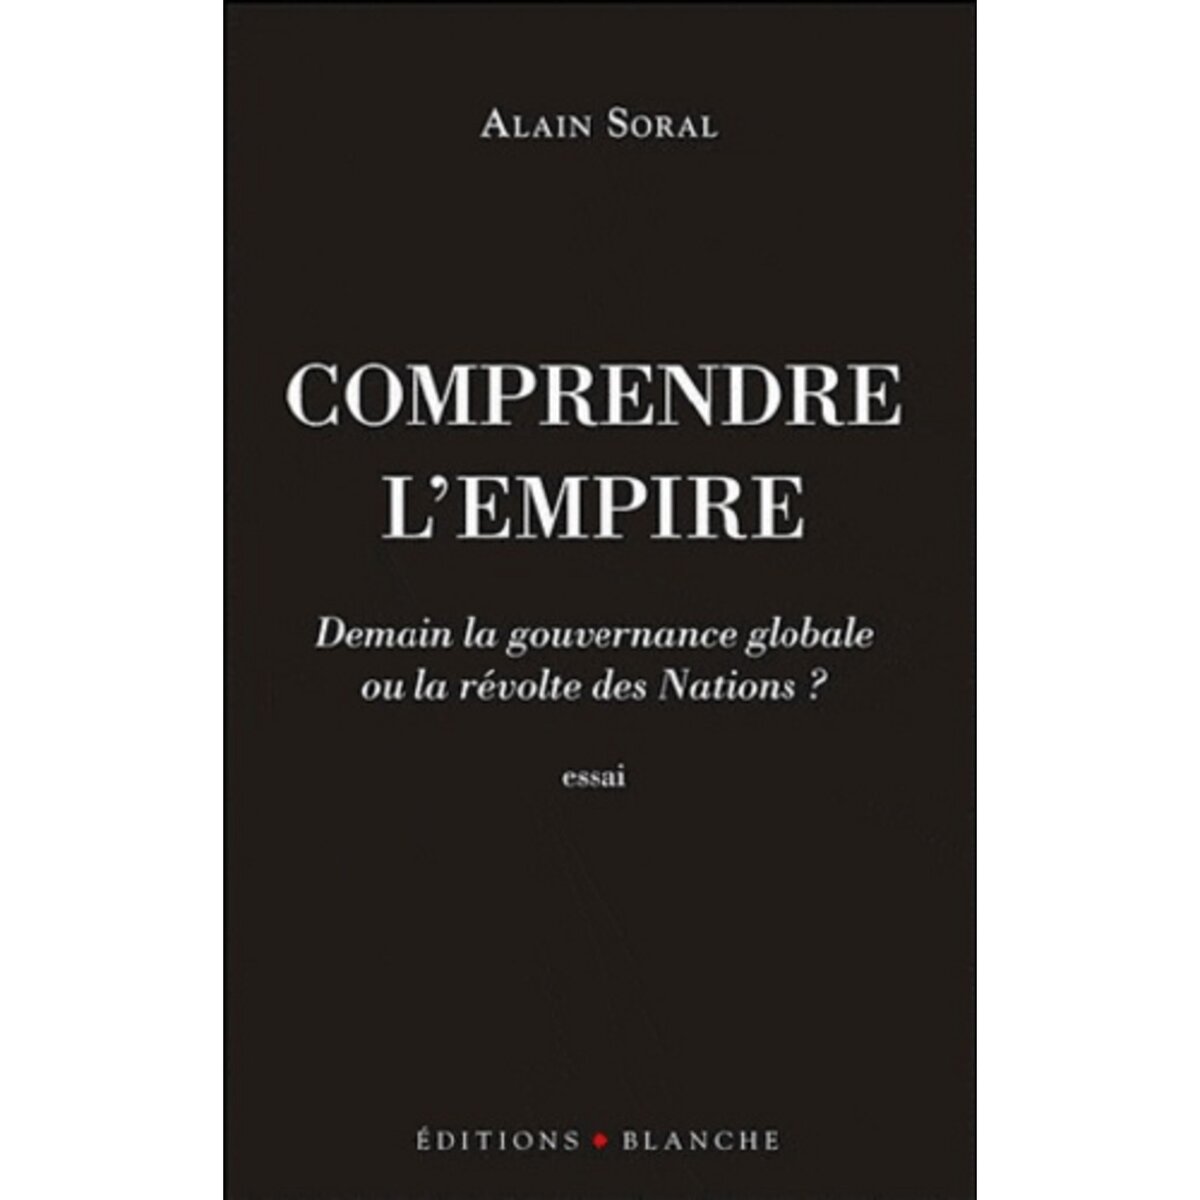  COMPRENDRE L'EMPIRE. DEMAIN LA GOUVERNANCE GLOBALE OU LA REVOLTE DES NATIONS ?, Soral Alain